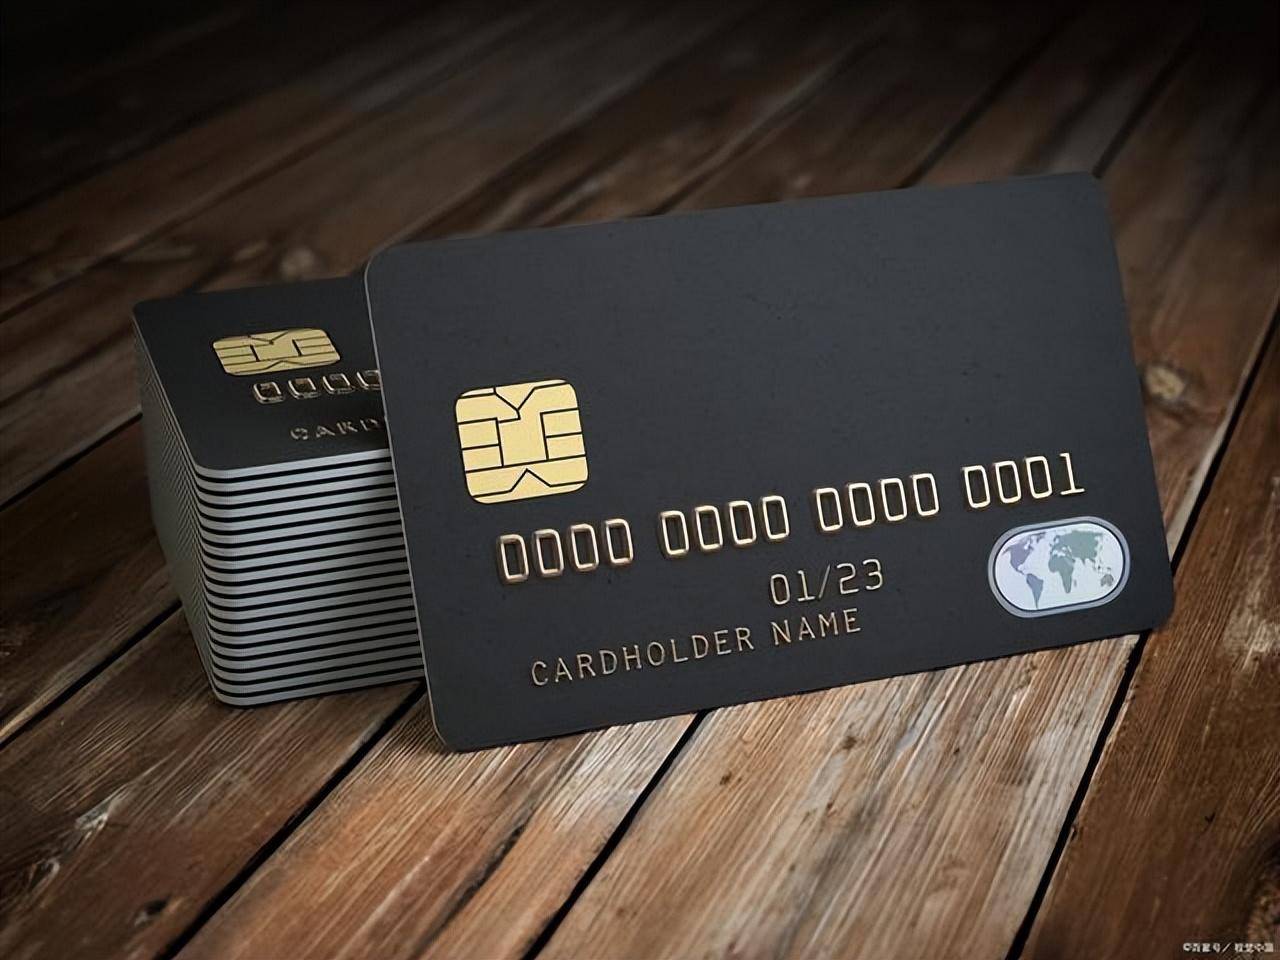 百夫长黑金卡是世界上最早的特殊信用卡,这个卡也被人们称之为黑卡